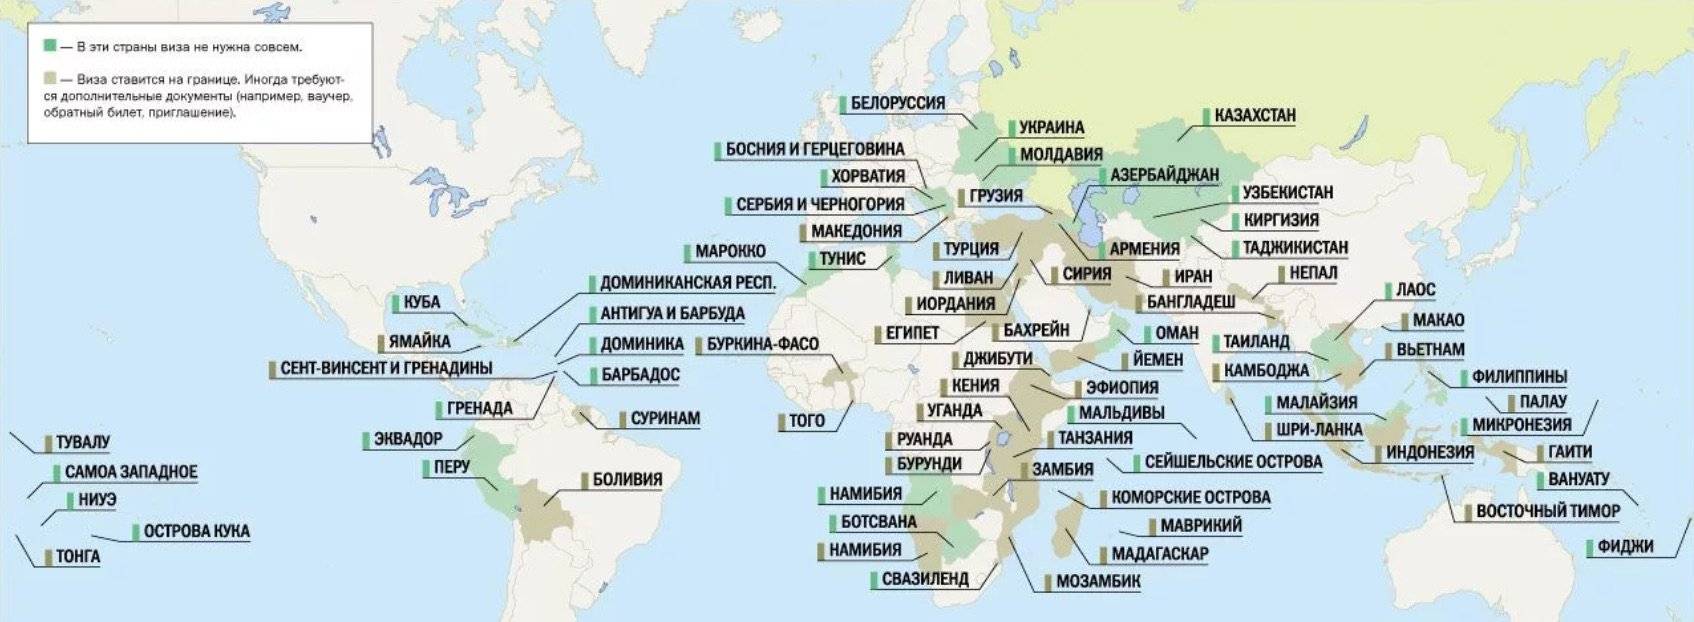 Топ-16 стран для привитых туристов из россии в августе 2021 года — куда поехать отдыхать без пцр-теста безопасно за границу